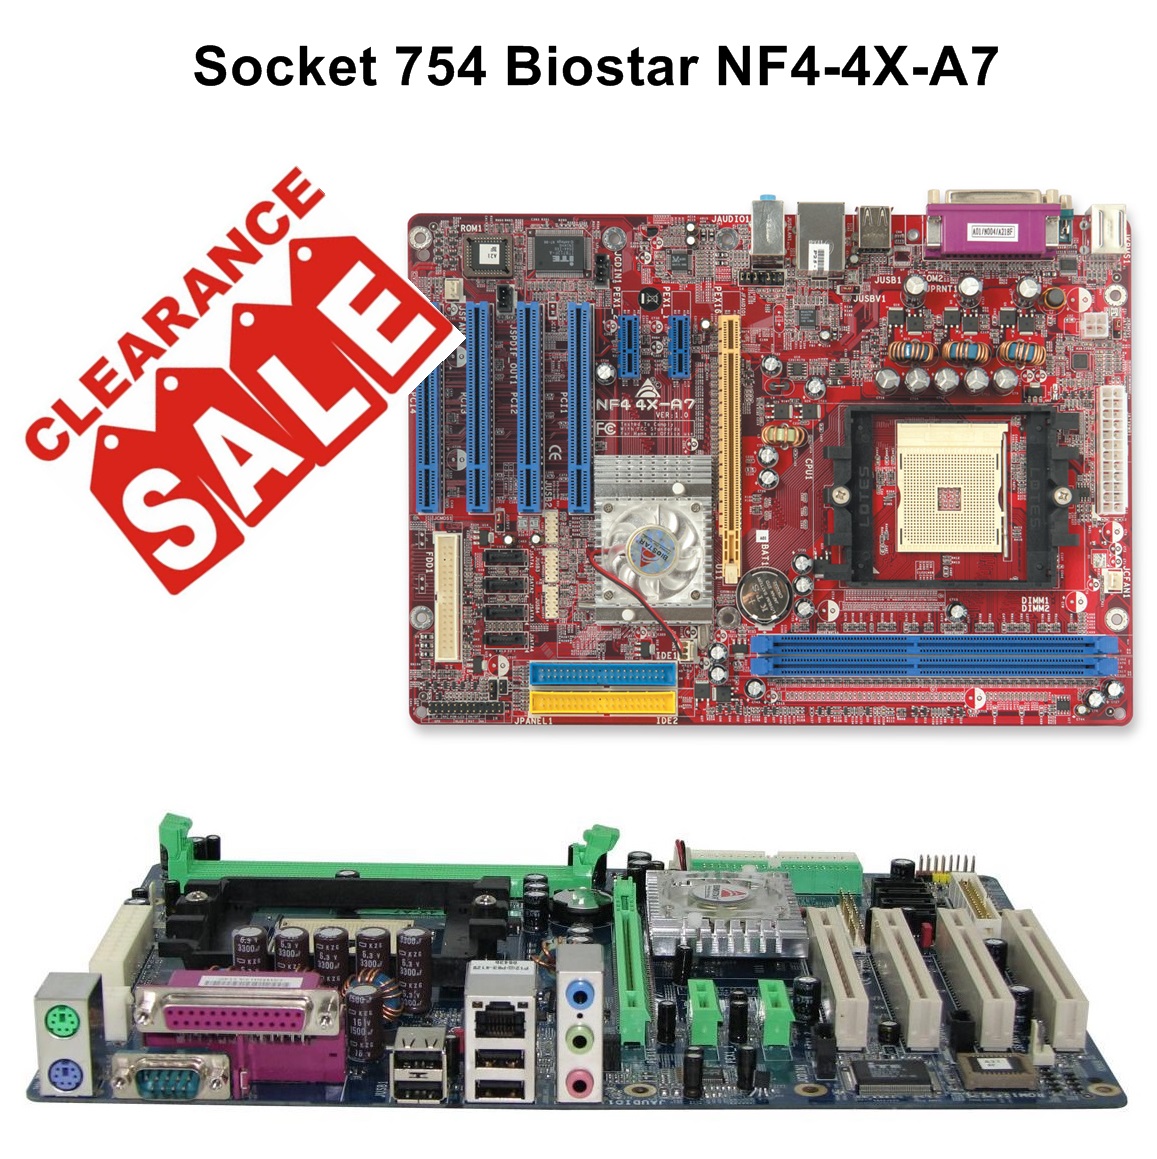 Socket 754 Biostar NF4-4X-A7